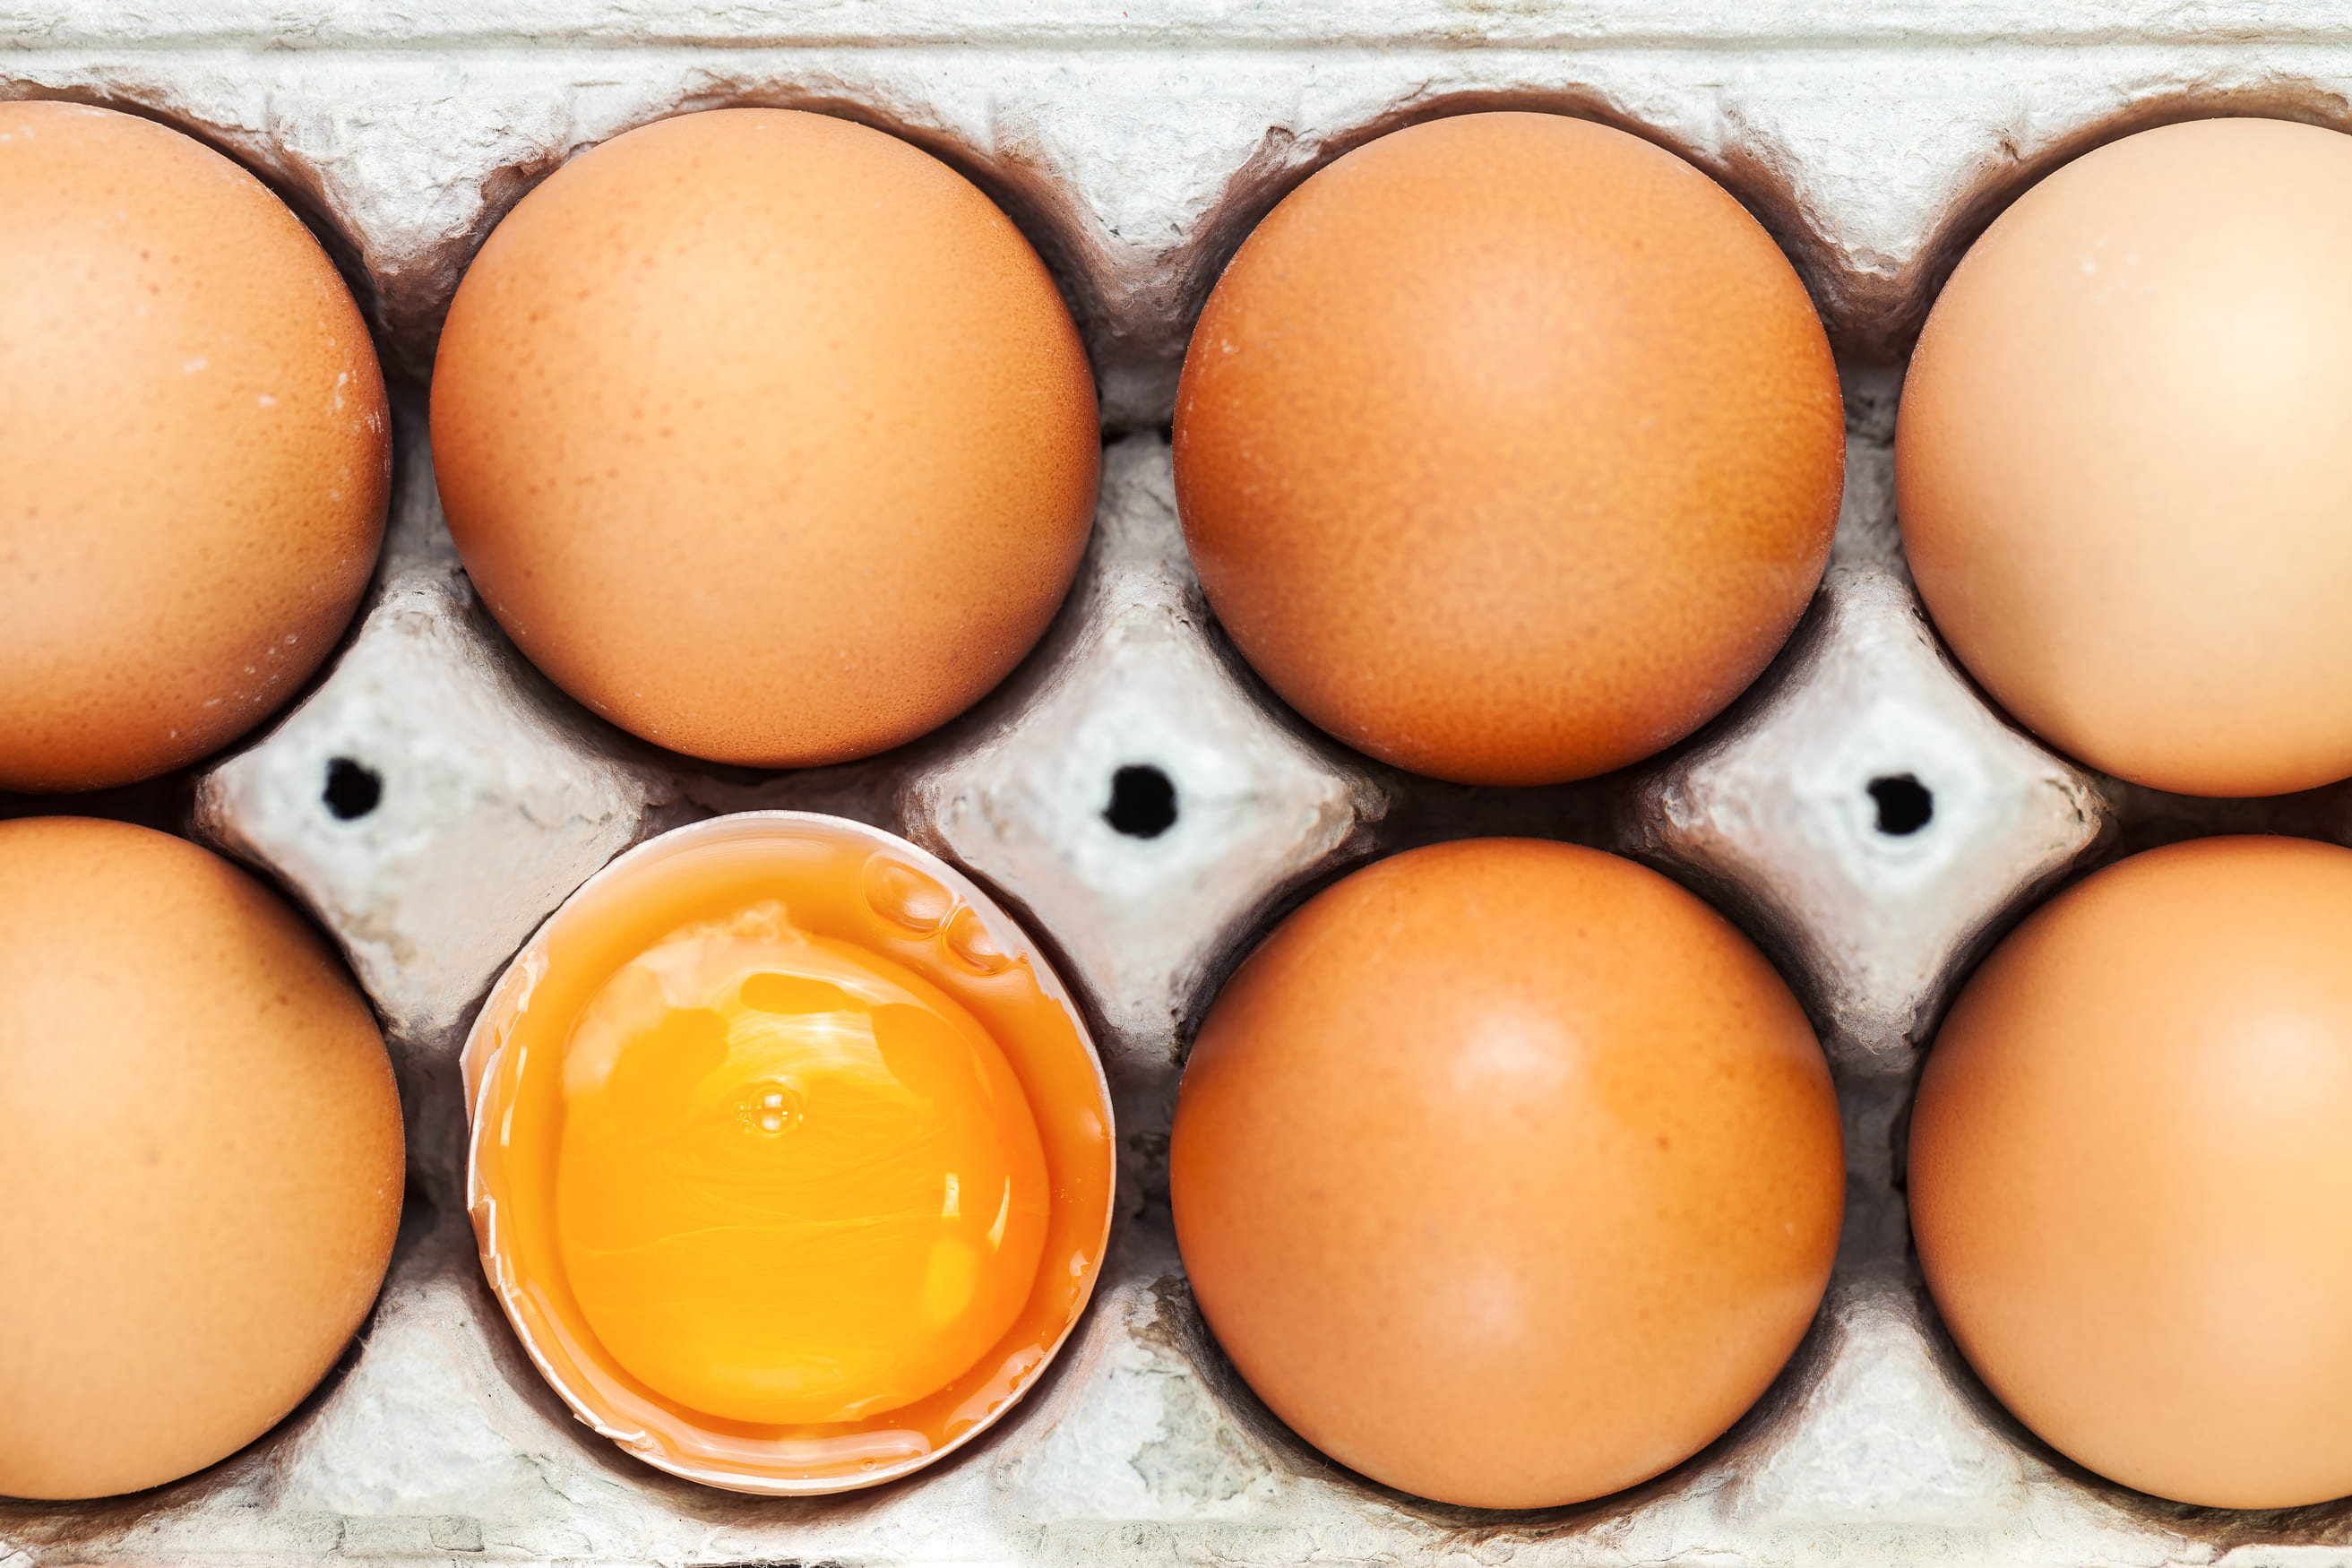 液蛋的來源多半是無法裝入市售盒裝的洗選蛋，因為超出規格以外（稱為格外蛋），因此多被拿來製成液蛋。（圖片來源：Dreamstime／典匠影像）